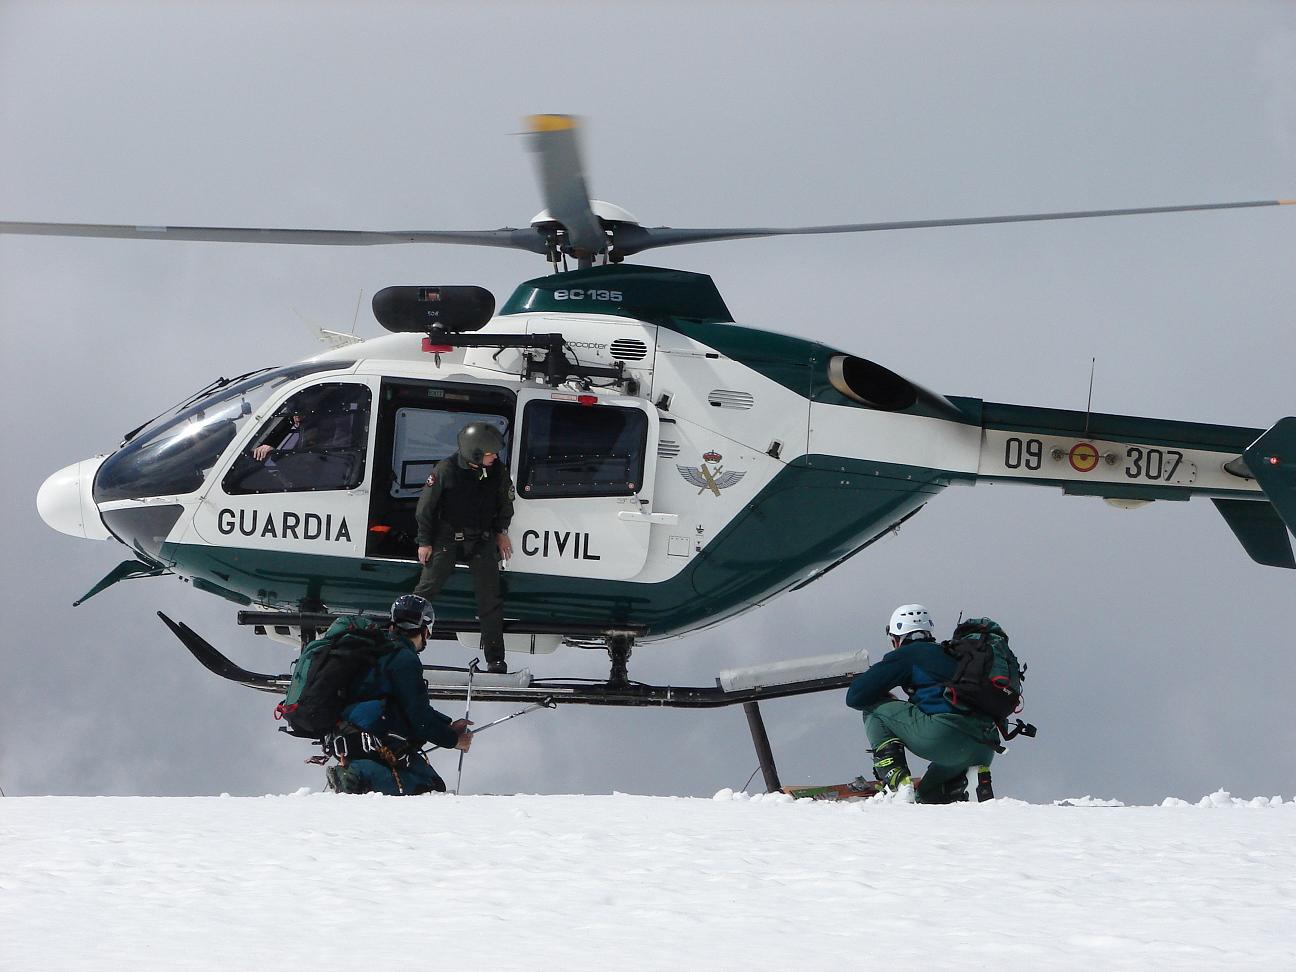 Rescatados dos montañeros en la cumbre de Peñalara y  La Pinilla